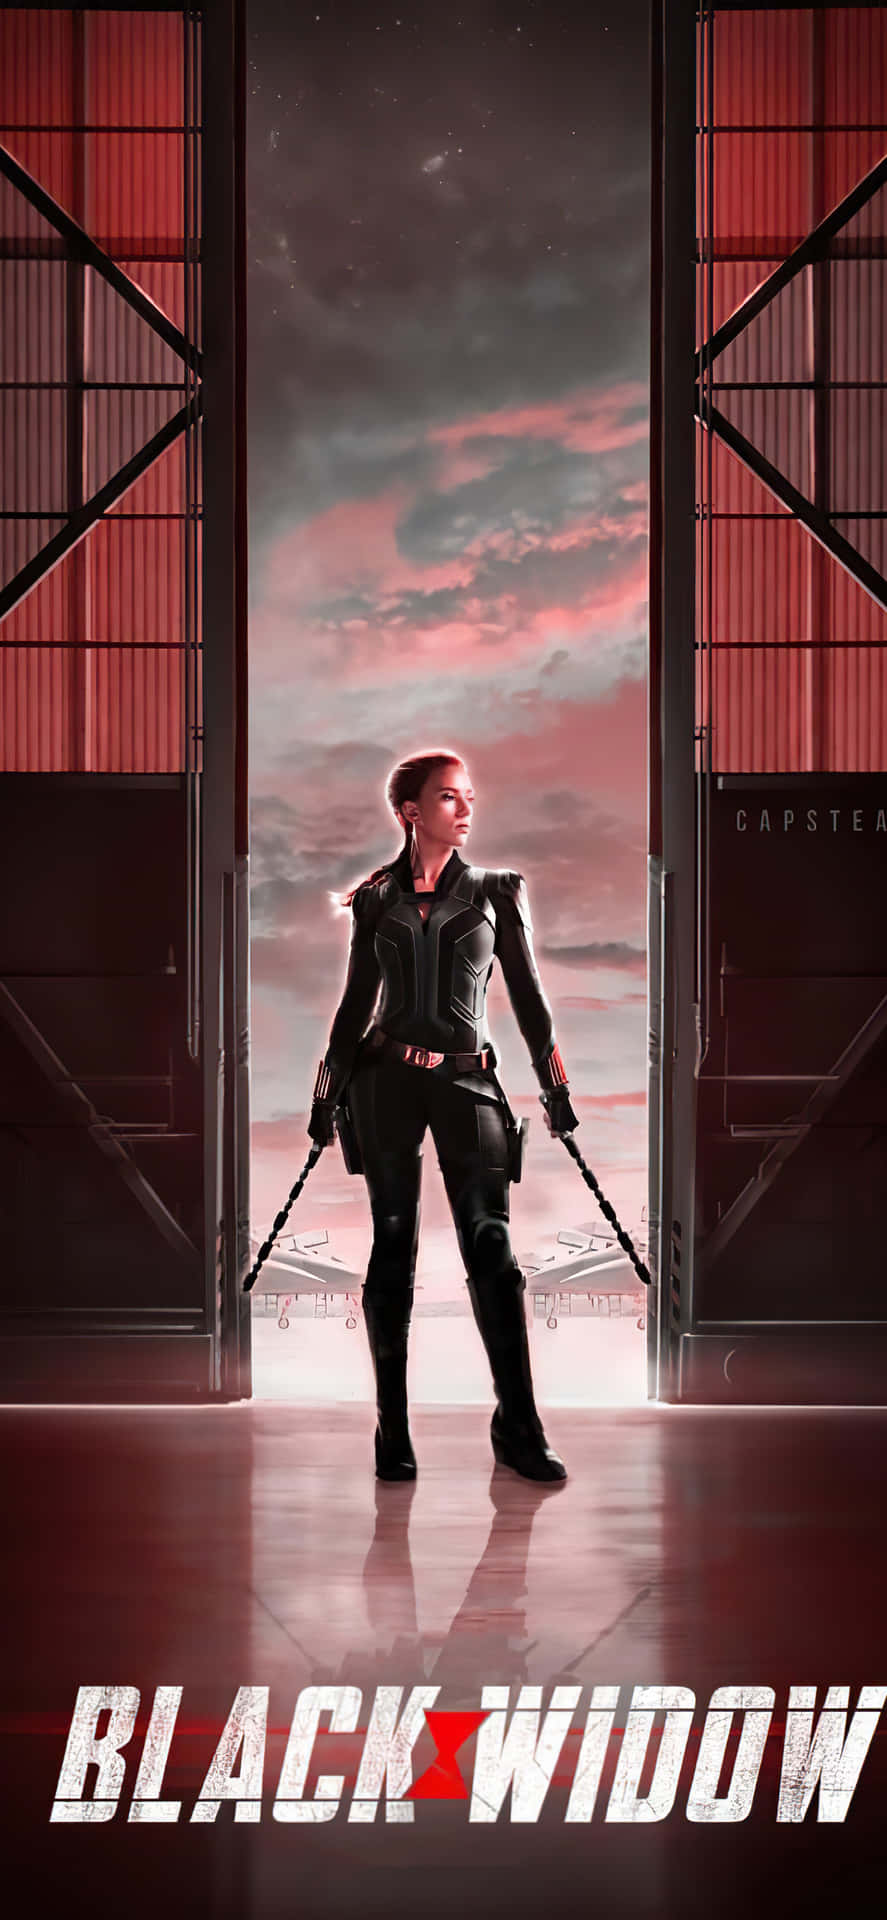 Natasha Romanoff, an Agent of S.H.I.E.L.D. Wallpaper